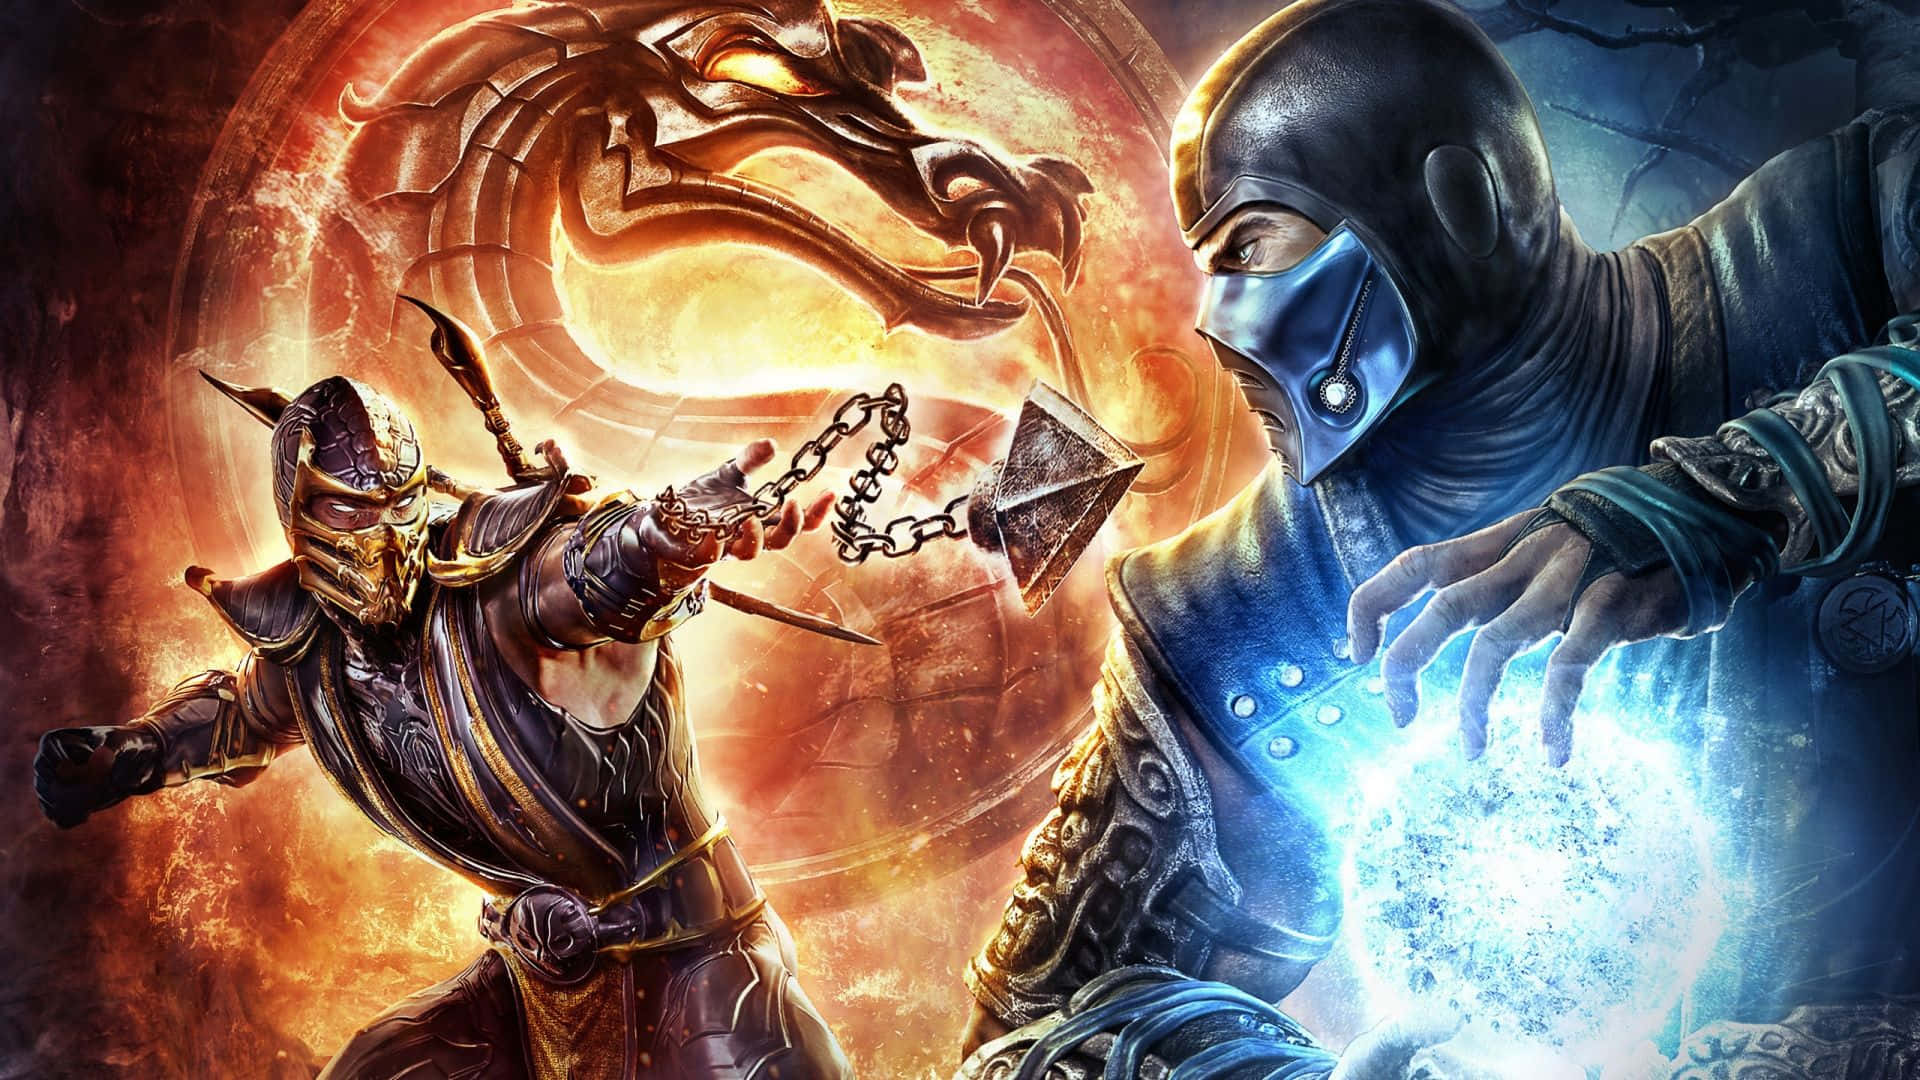 Enter the Raiden: Take A Trip Through Mortal Kombat